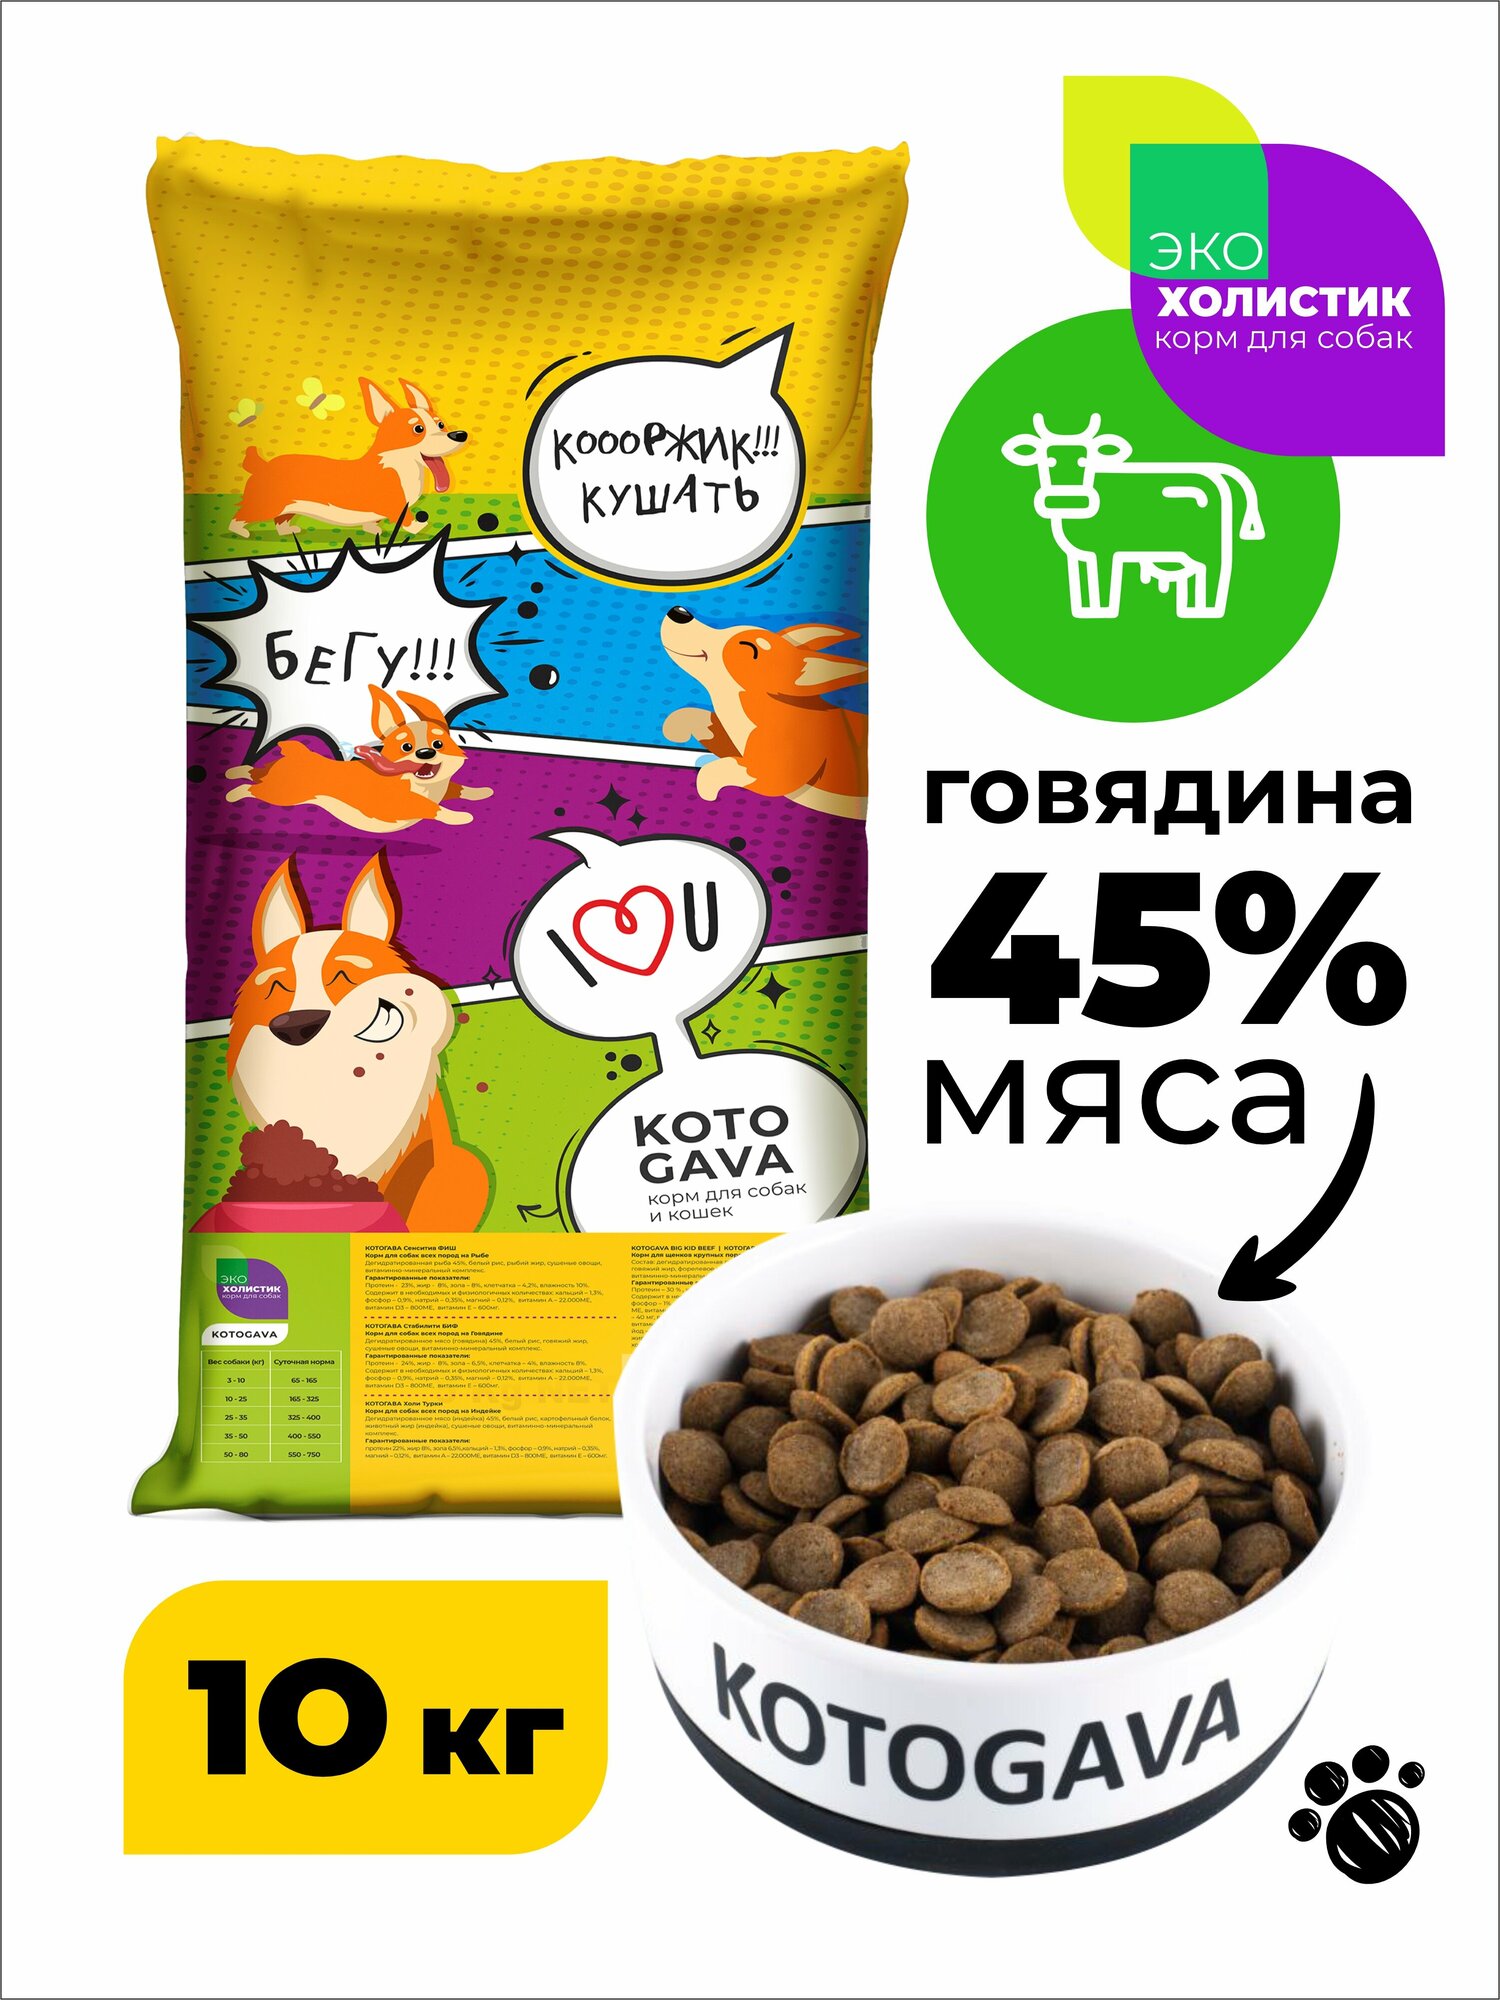 Kotogava полнорационный сухой корм для собак, холистик 45% говядины, 10кг